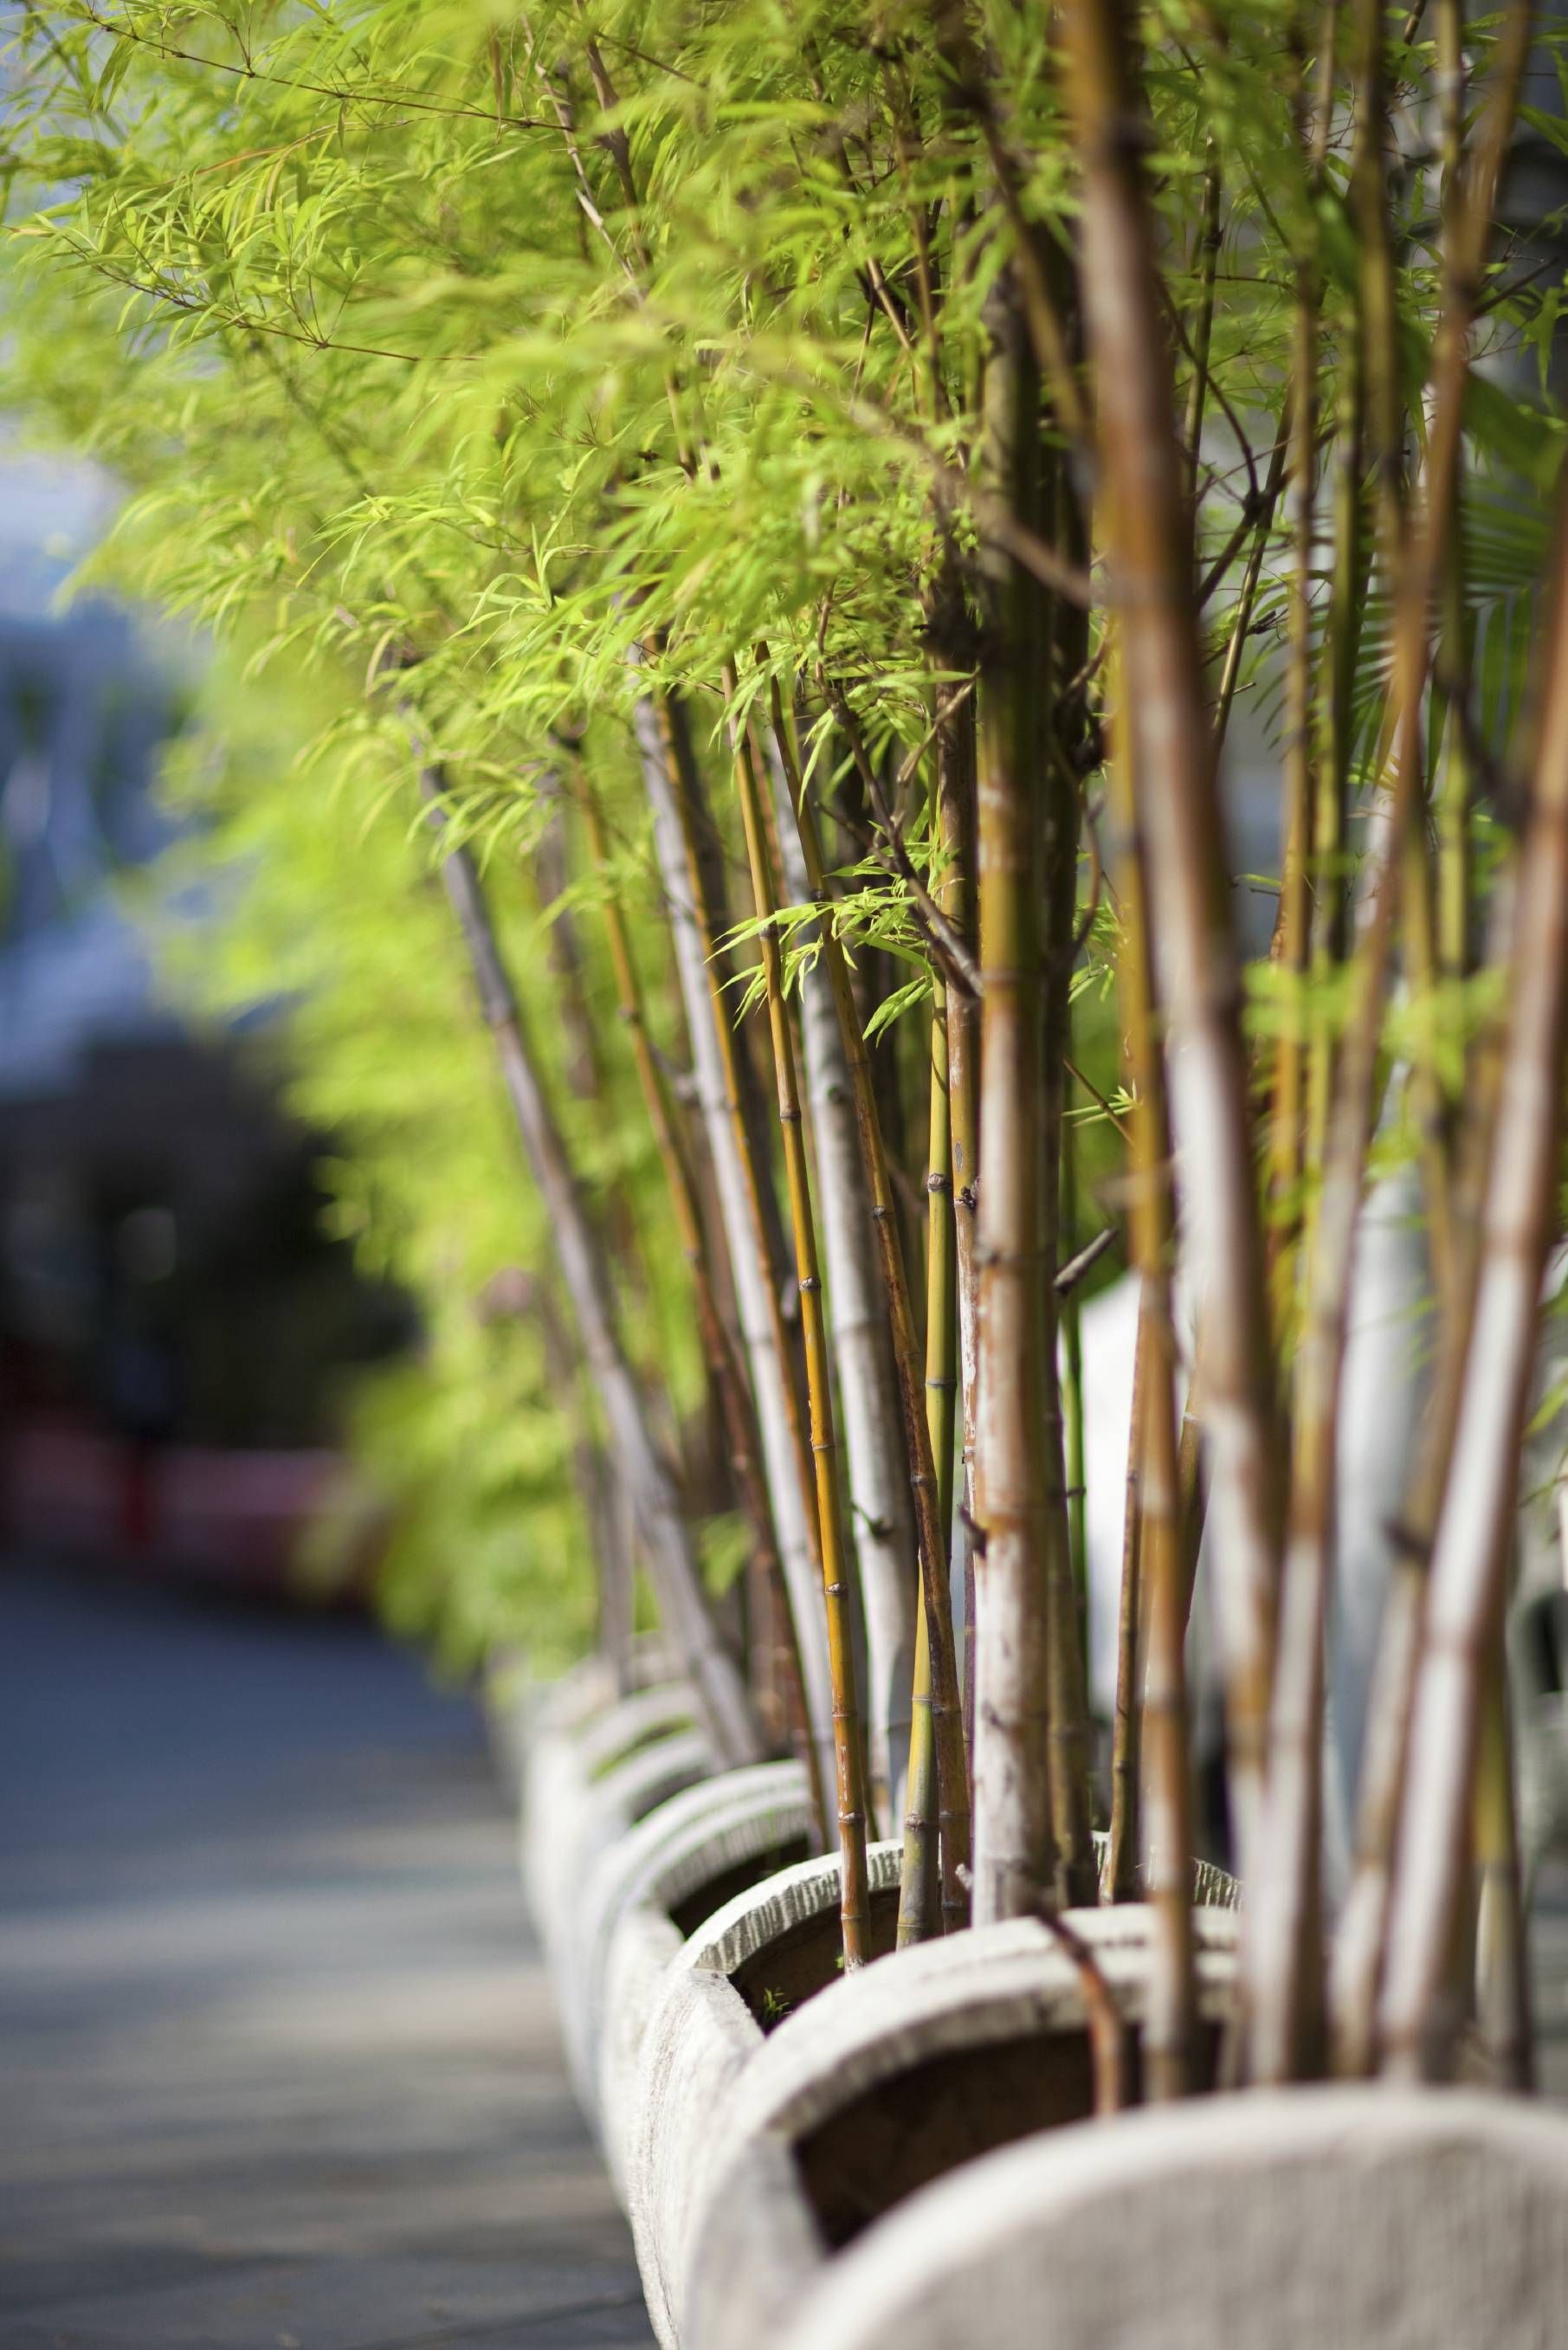 园林绿化竹子品种图片